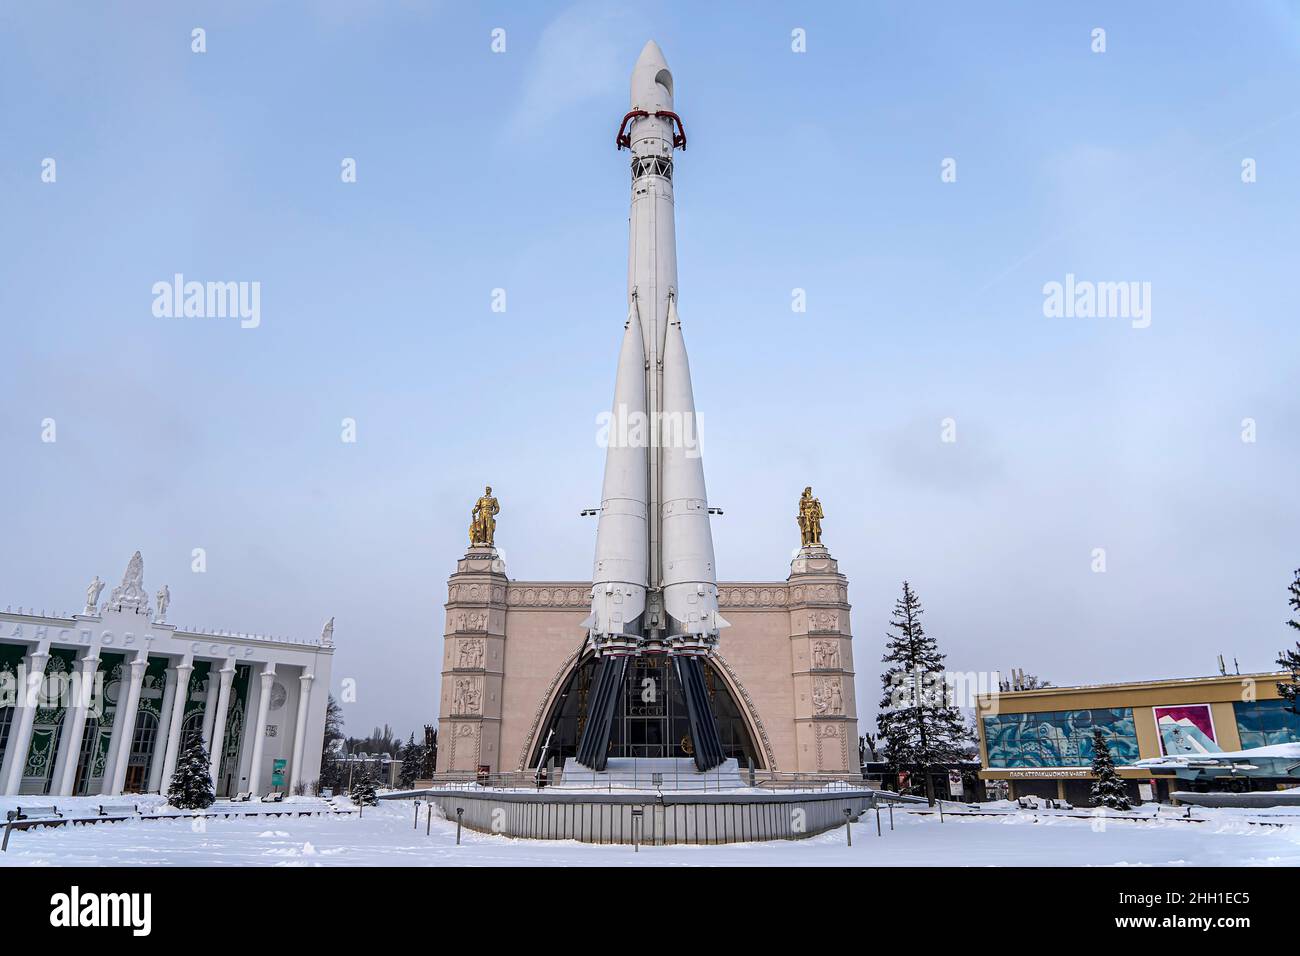 La première fusée spatiale à trois étages Vostok au monde à une exposition à Moscou.Sur fond de ciel bleu et de flocons de neige.Traduction : Banque D'Images